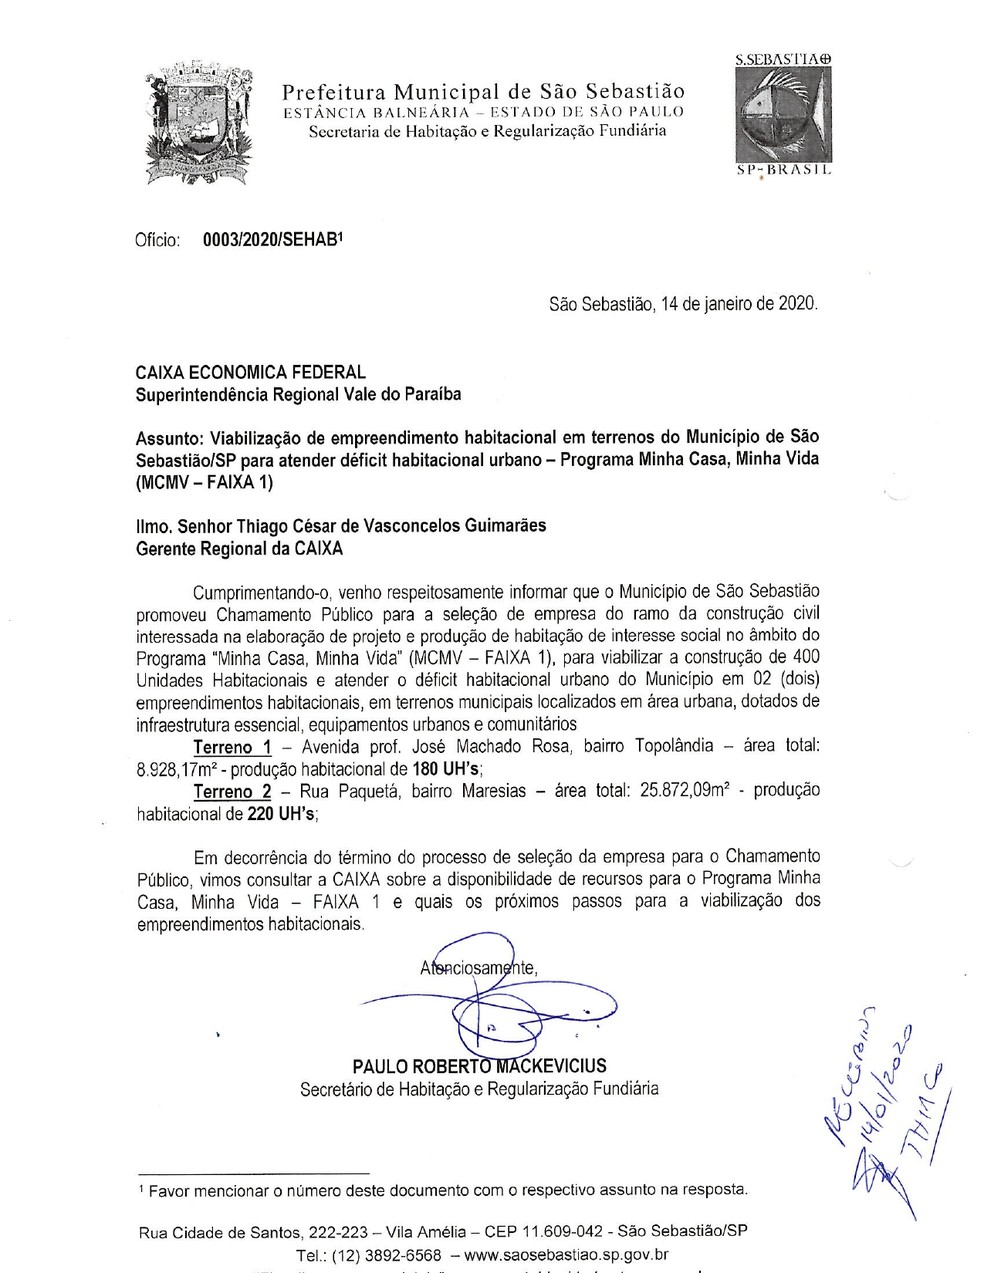 Ofício da prefeitura de São Sebastião (SP) enviado à Caixa — Foto: Reprodução